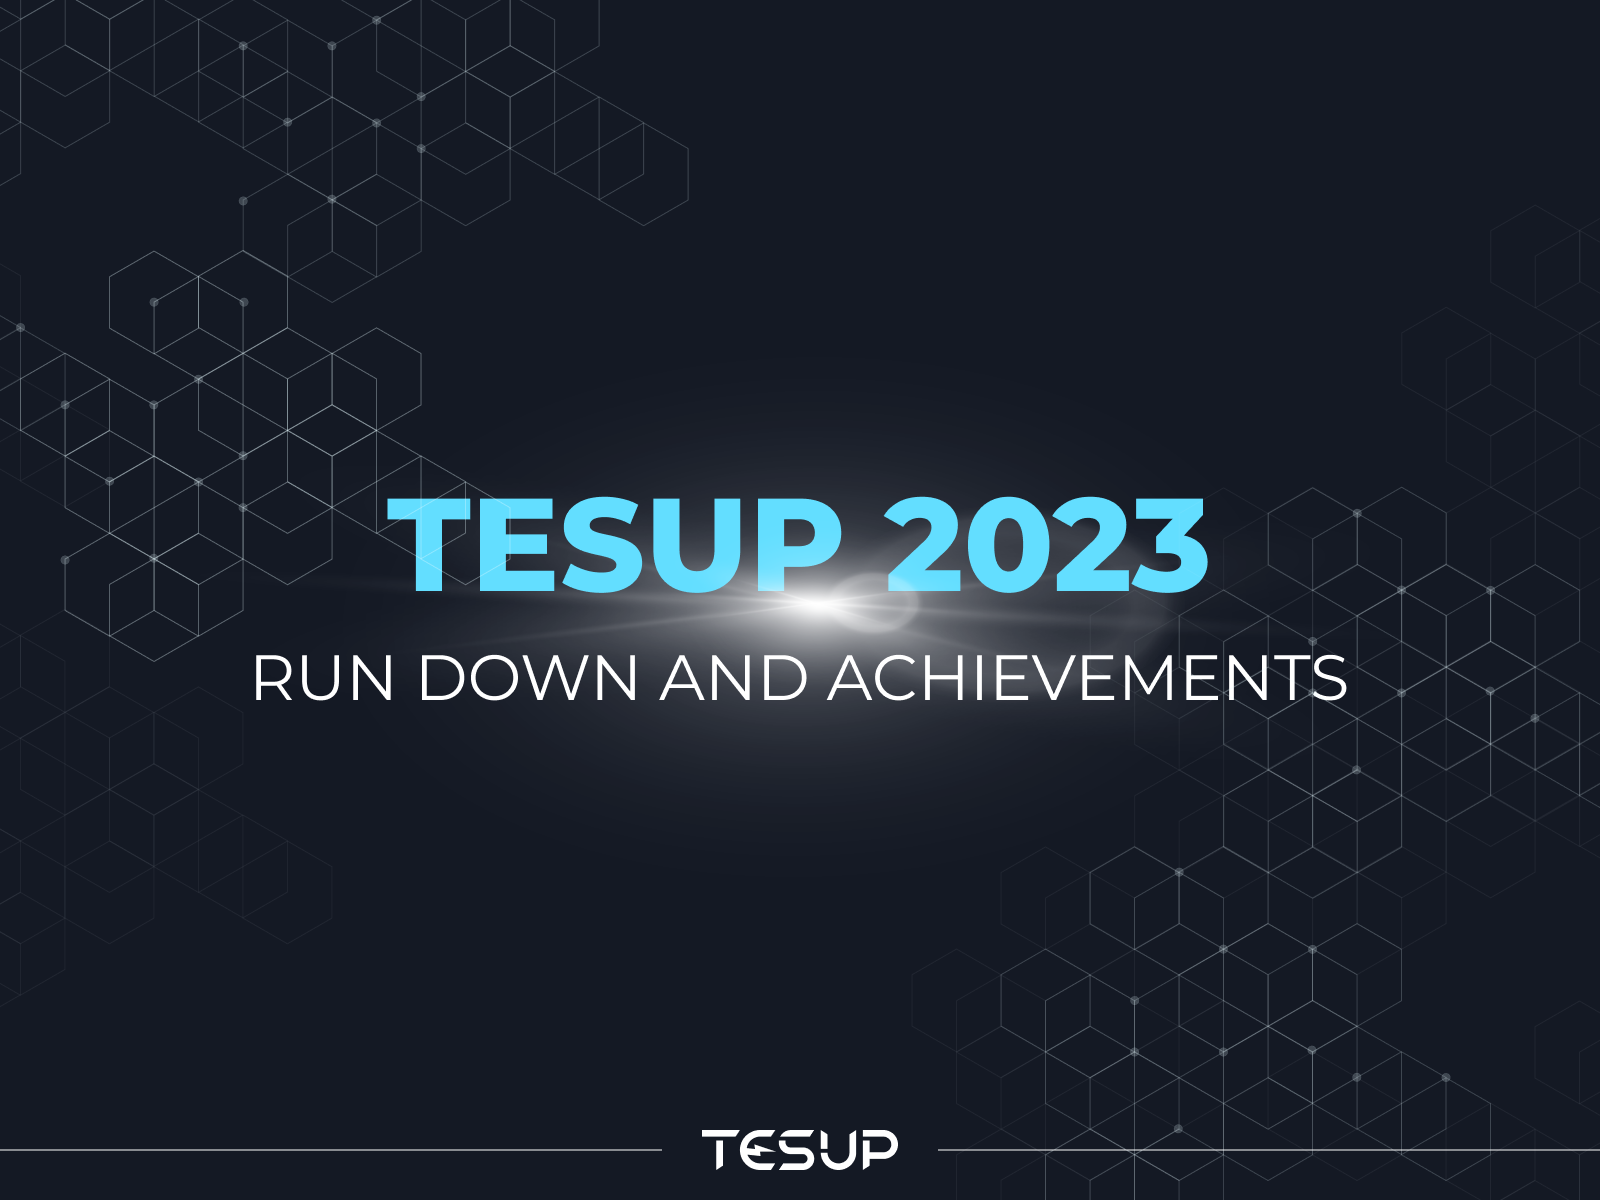 TESUP の 2023 年における持続可能なエネルギーにおけるレジリエンス、イノベーション、および世界的影響への旅